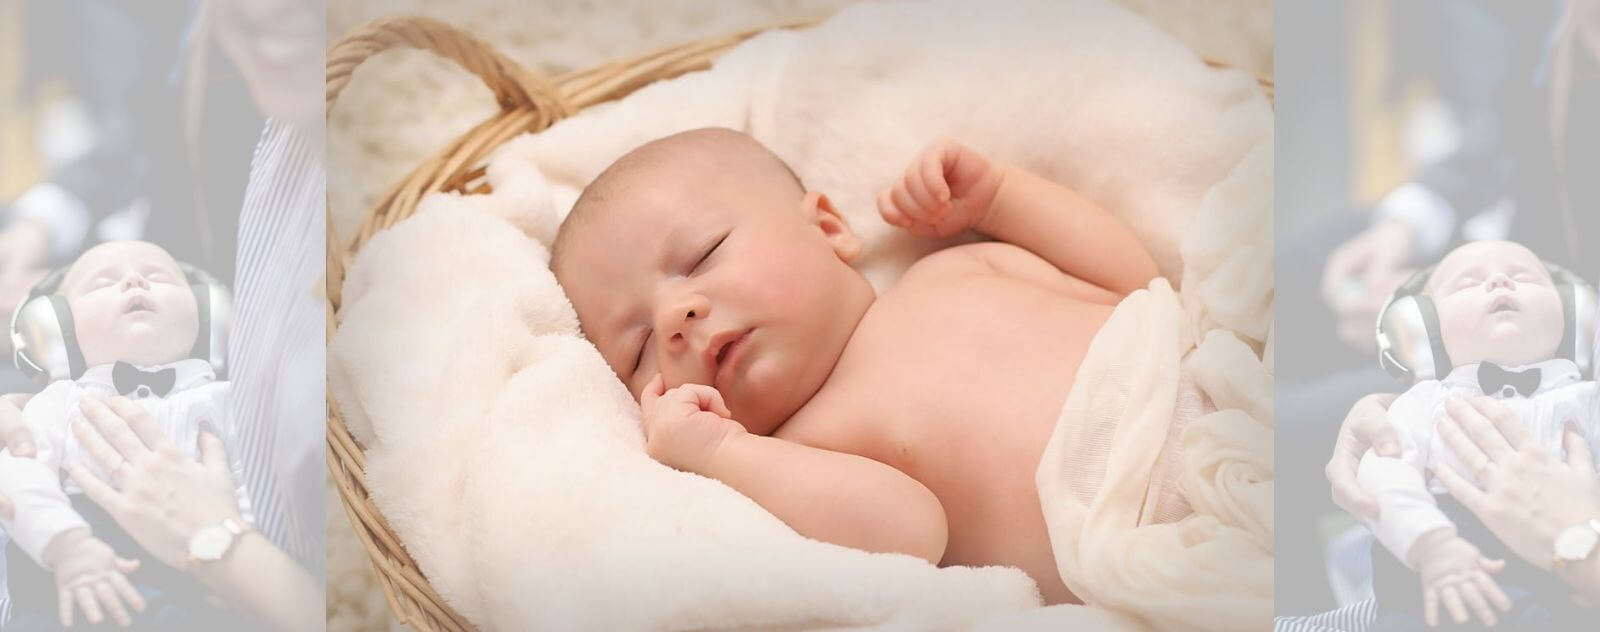 Baby Sleeping Thanks to White Noises